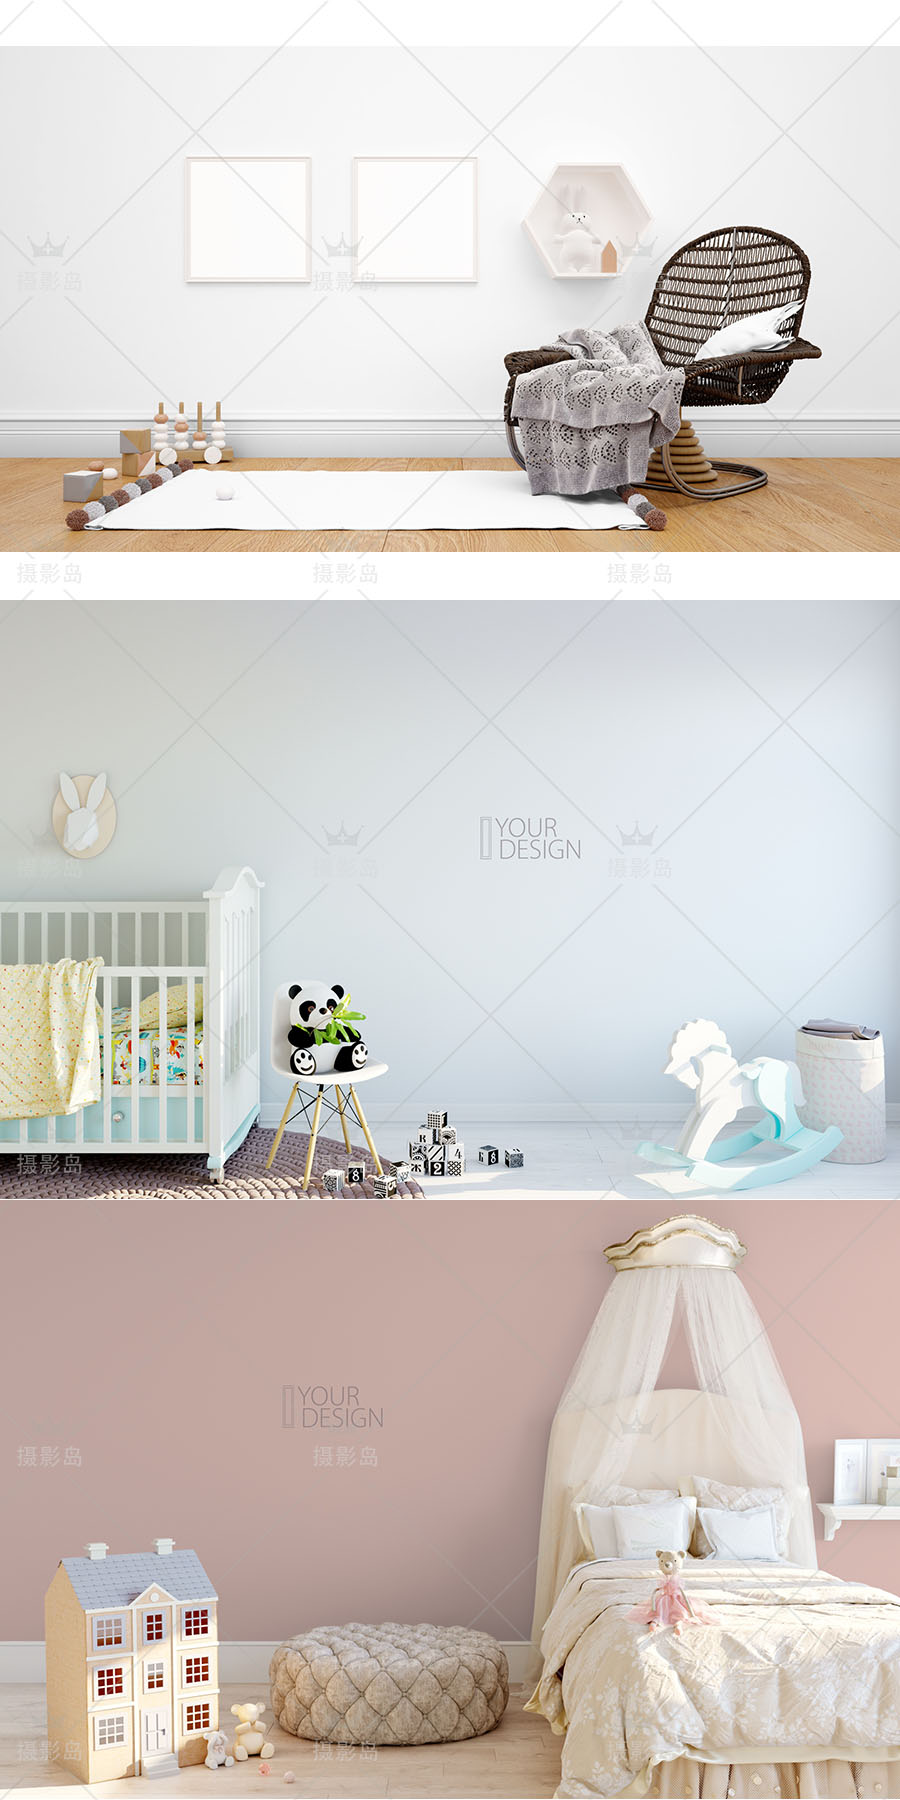 室内趣味创意设计3D立体合成背景模板， 宝宝儿童房效果抠图PSD素材